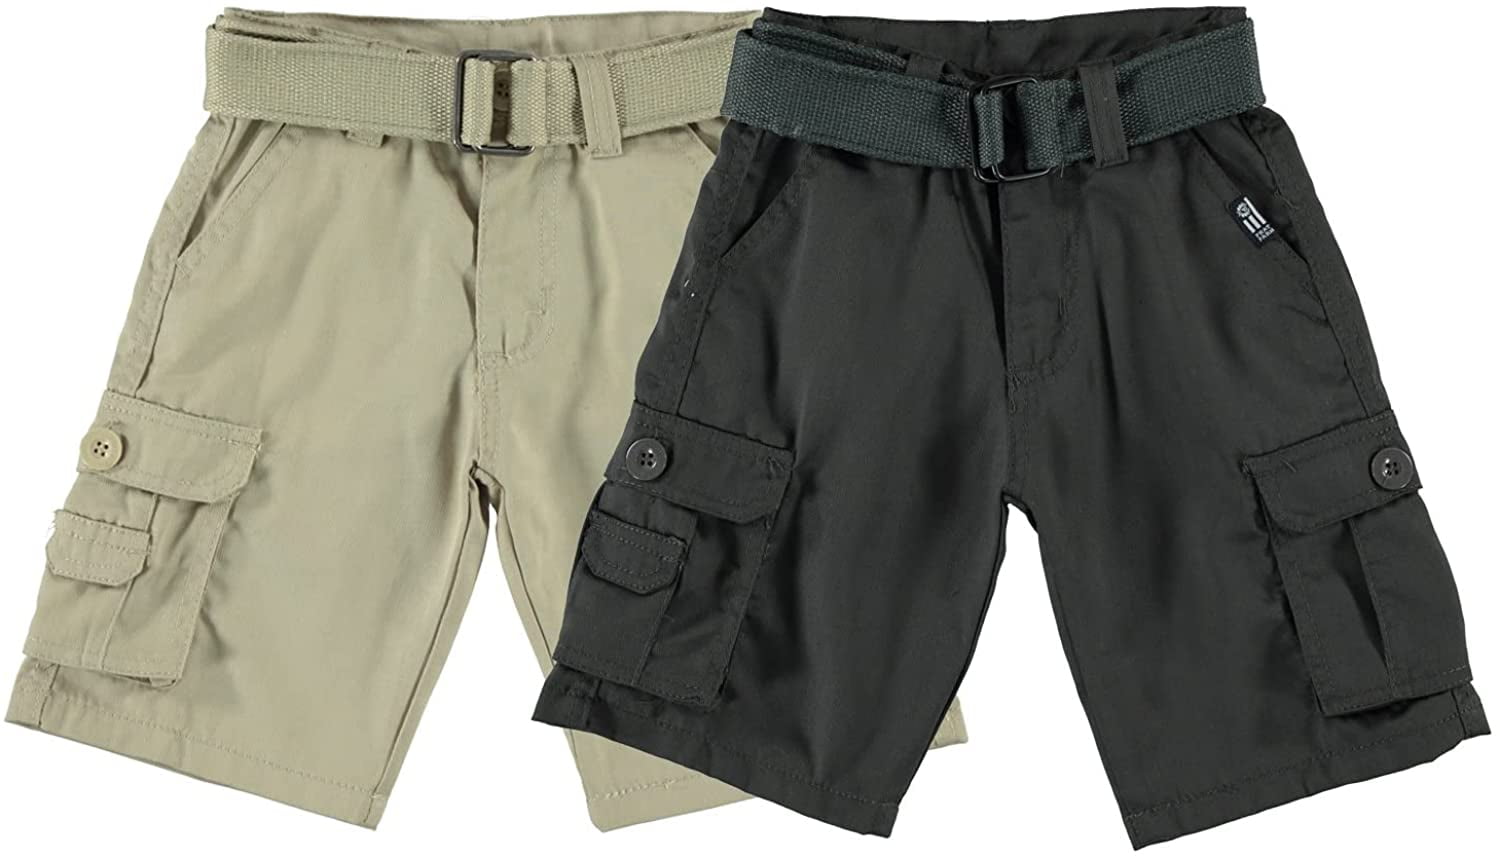 NWT $88 Tommy Bahama Shoreline Tan Cargo Shorts Mens Size 30 34 Key Grip NEW 